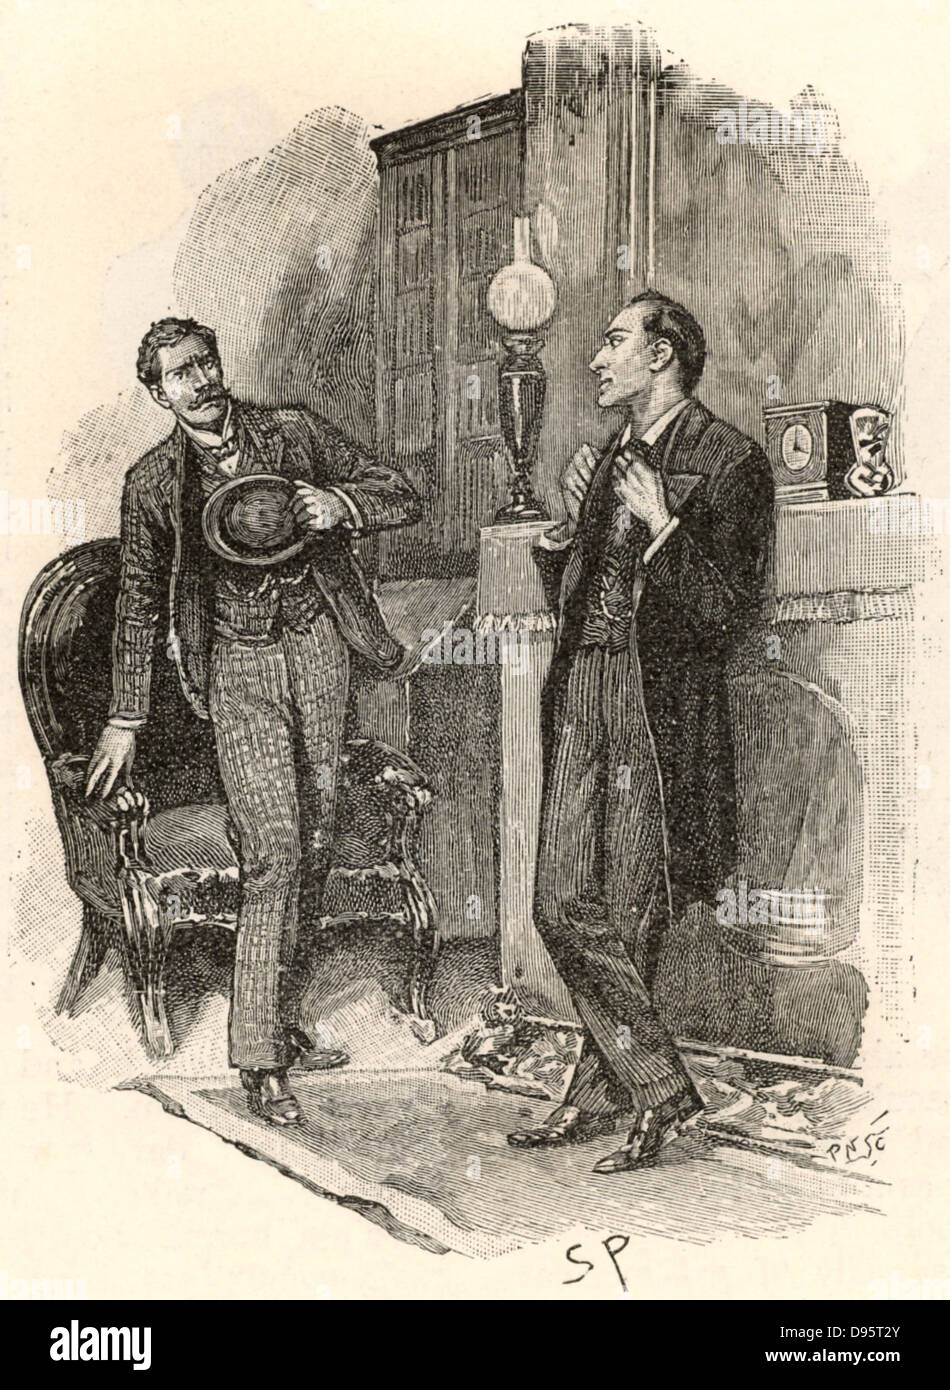 L'avventura della faccia gialla". Un visitatore di Holmes che zampilla in allarme che il detective dovrebbe conoscere il suo nome. "Se si desidera conservare il tuo incognito,' detto Holmes, sorridente, "Mi dovrebbe suggerire che si cessa di scrivere il vostro nome nel rivestimento del vostro cappello ...". Da "Le avventure di Sherlock Holmes' da Conan Doyle di 'The Strand Magazine' (Londra, 1893). Illustrazione di Sidney Paget e il primo artista a disegnare Sherlock Holmes. Incisione. Foto Stock